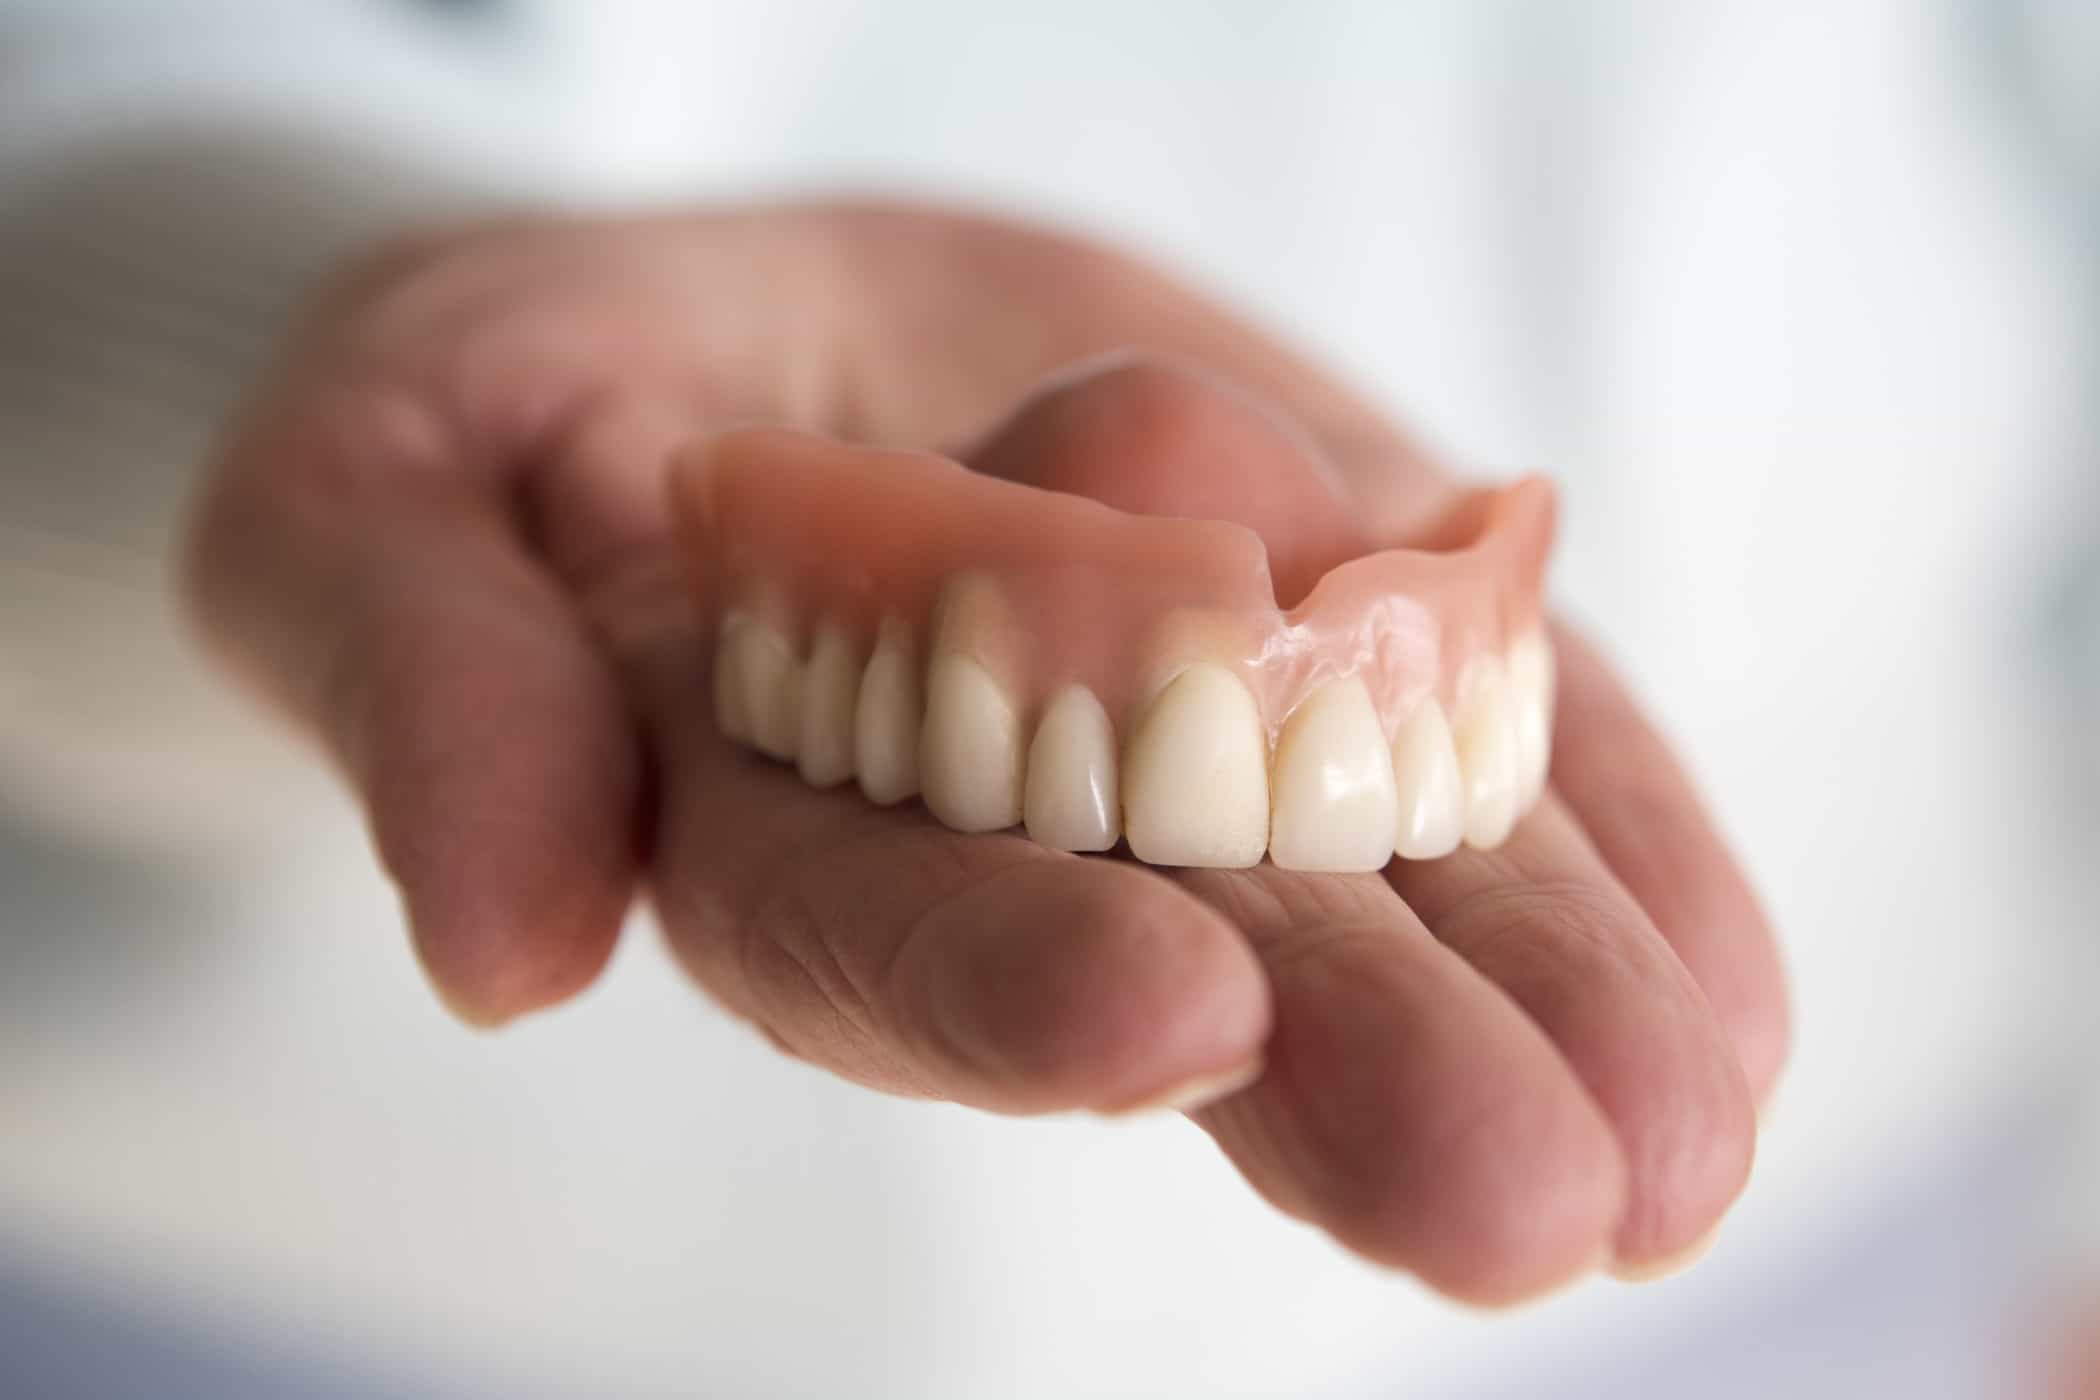 תהליך התקנת שיניים תותבות מתחילתו ועד סופו שאתם צריכים לדעת